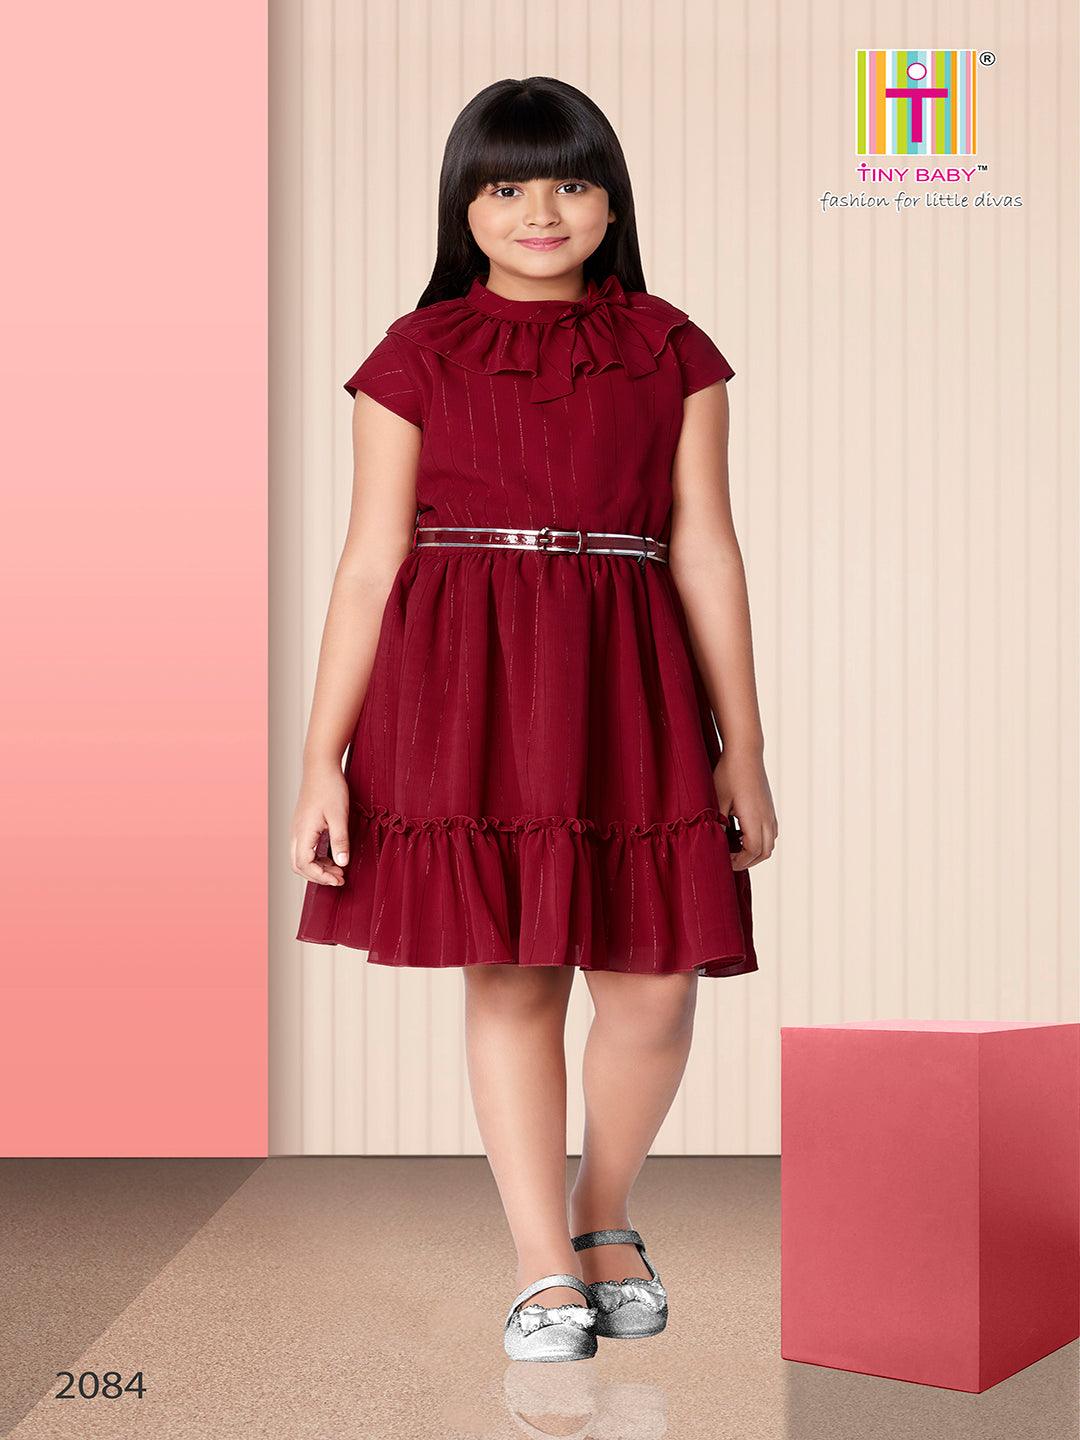 Tiny Baby Maroon Colored Dress - 2084 Maroon - TINY BABY INDIA shop.tinybaby.in